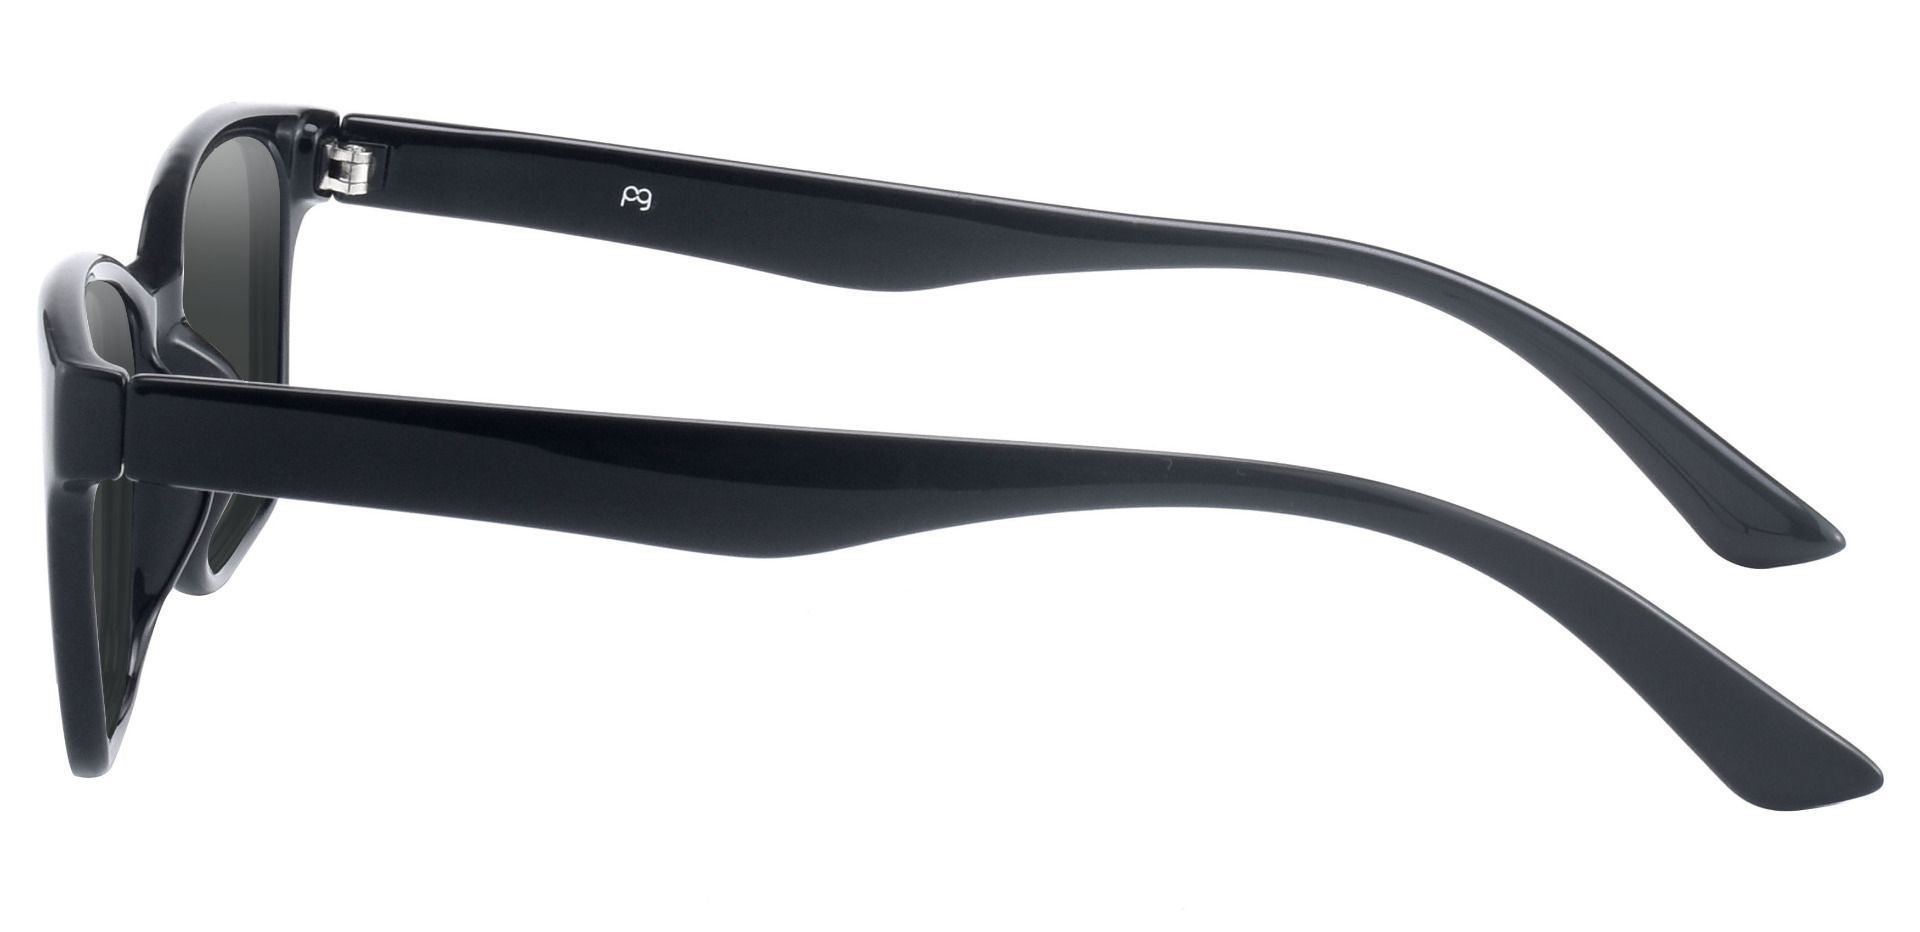 Osmond Rectangle Prescription Sunglasses - Black Frame With Gray Lenses